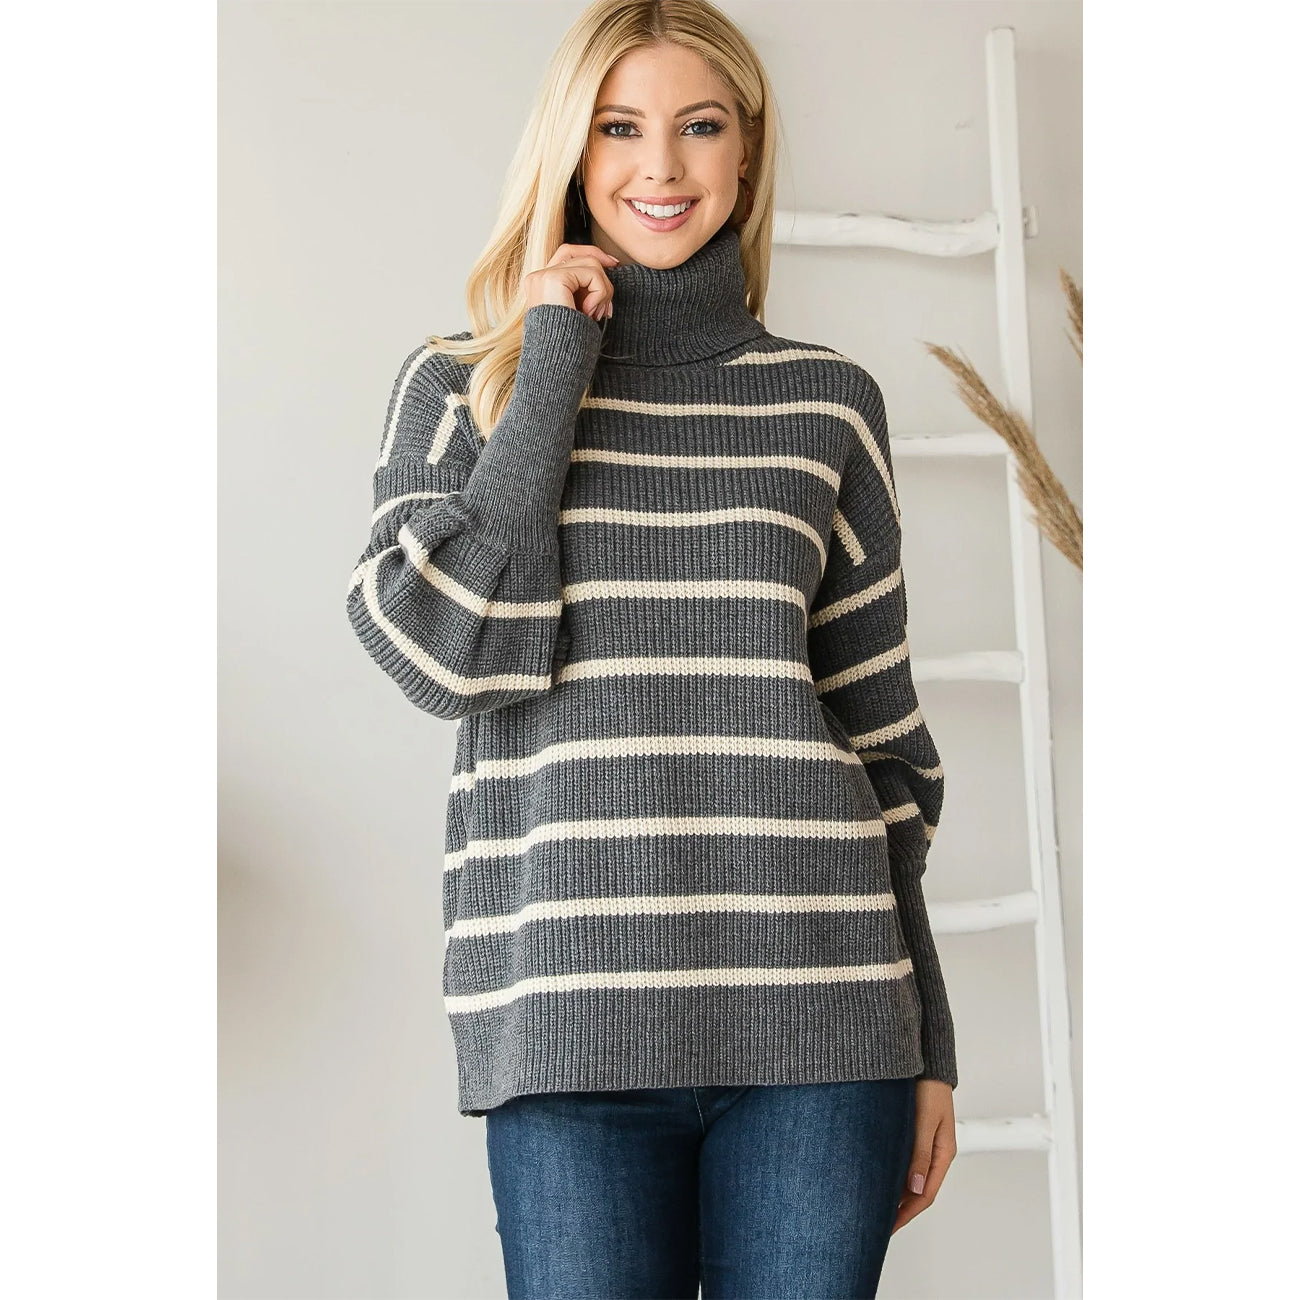 Heavy Knit Striped Turtleneck Knit Women's Sweater